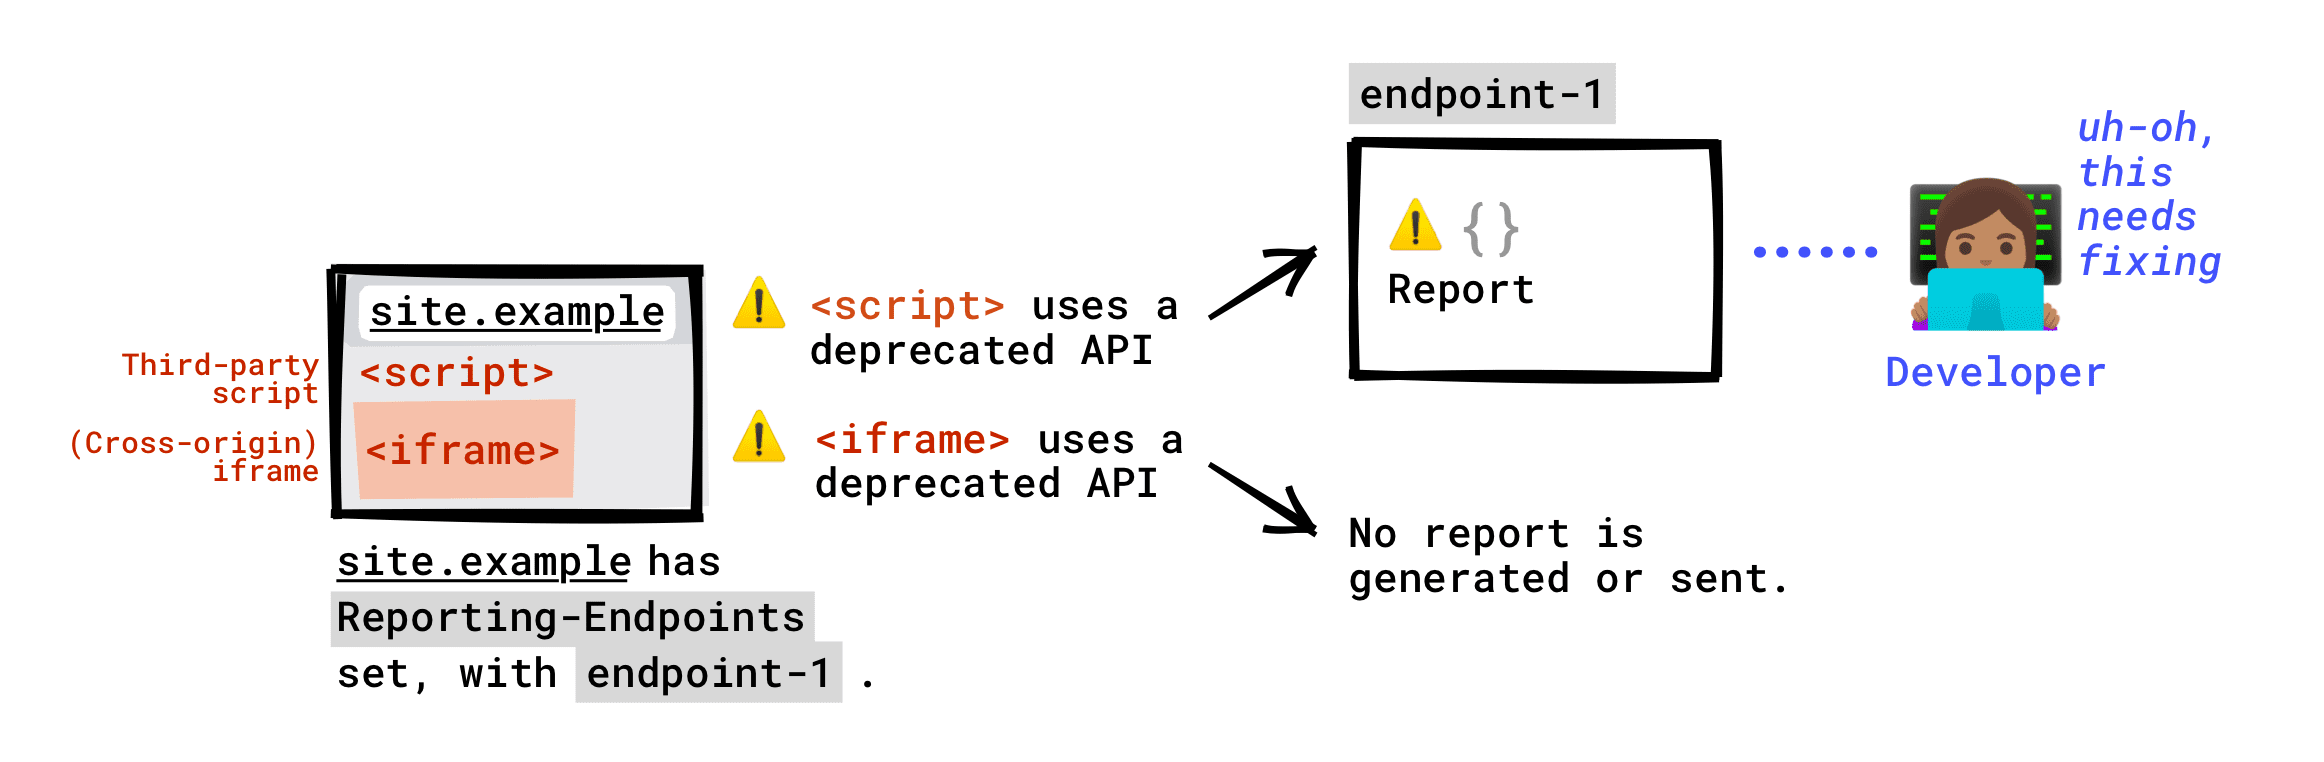 如果您的网页上设置了 Reporting-Endpoint 标头：系统会将网页上运行的第三方脚本调用的已弃用 API 报告给您的端点。由网页中嵌入的 iframe 调用的已弃用 API 不会报告给您的端点。仅当 iframe 服务器设置了 Reporting-Endpoint 时，系统才会生成弃用报告，并且系统会将此报告发送到 iframe 服务器设置的任何端点。